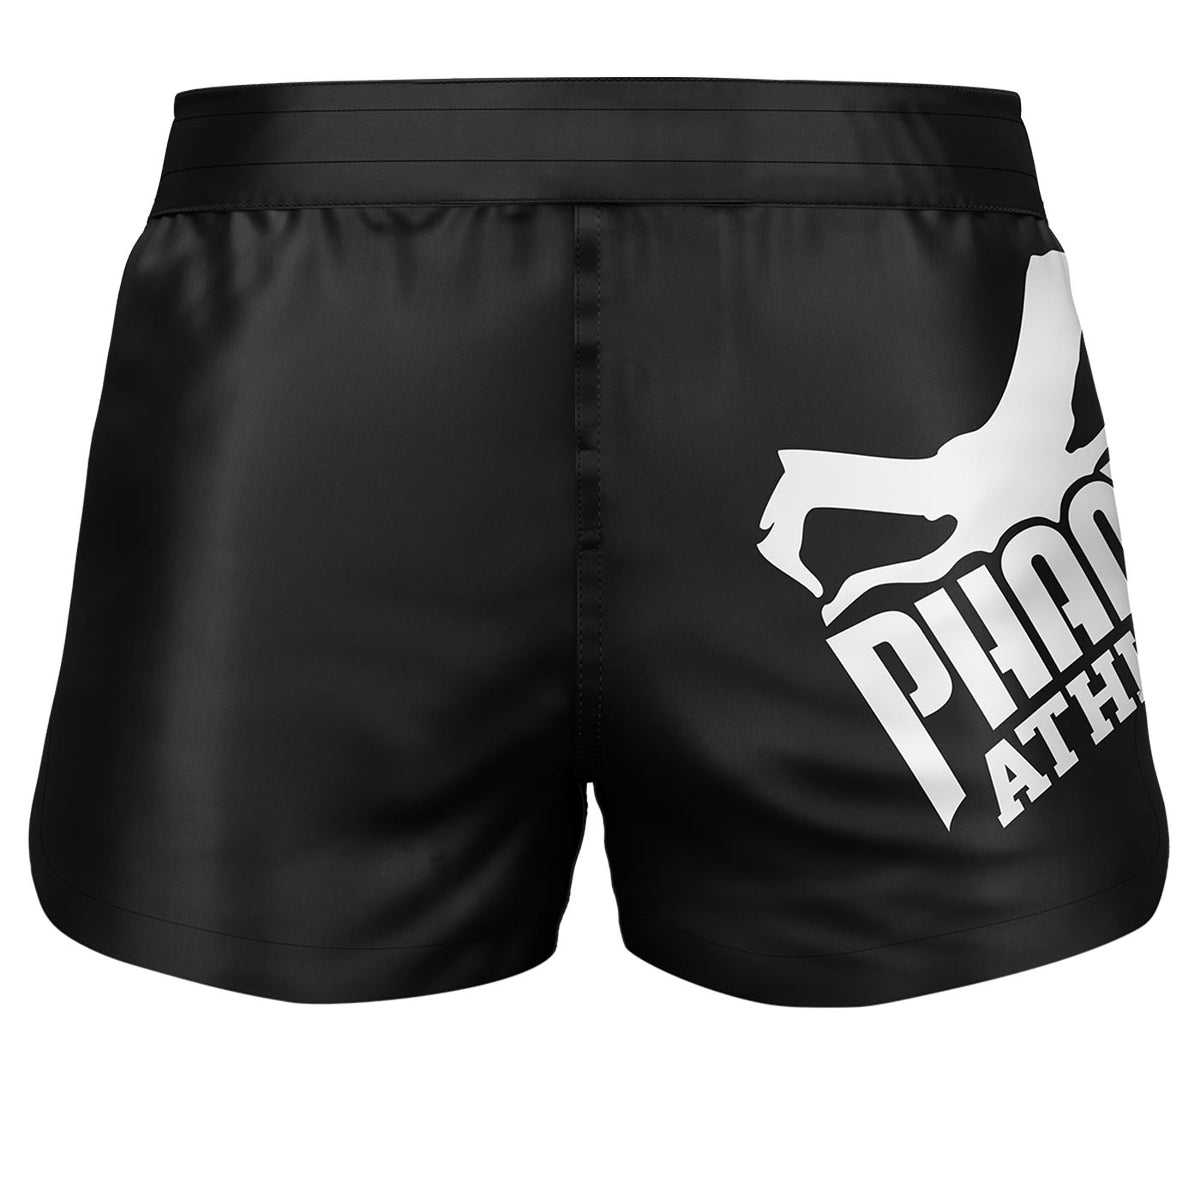 Phantom Fightshorts Fusion 2v1. Špičkové šortky pre vaše bojové umenia. Ideálne pre MMA, Muay Thai, BJJ, wrestling a ďalšie. V čiernom prevedení s veľkým logom Phantom .